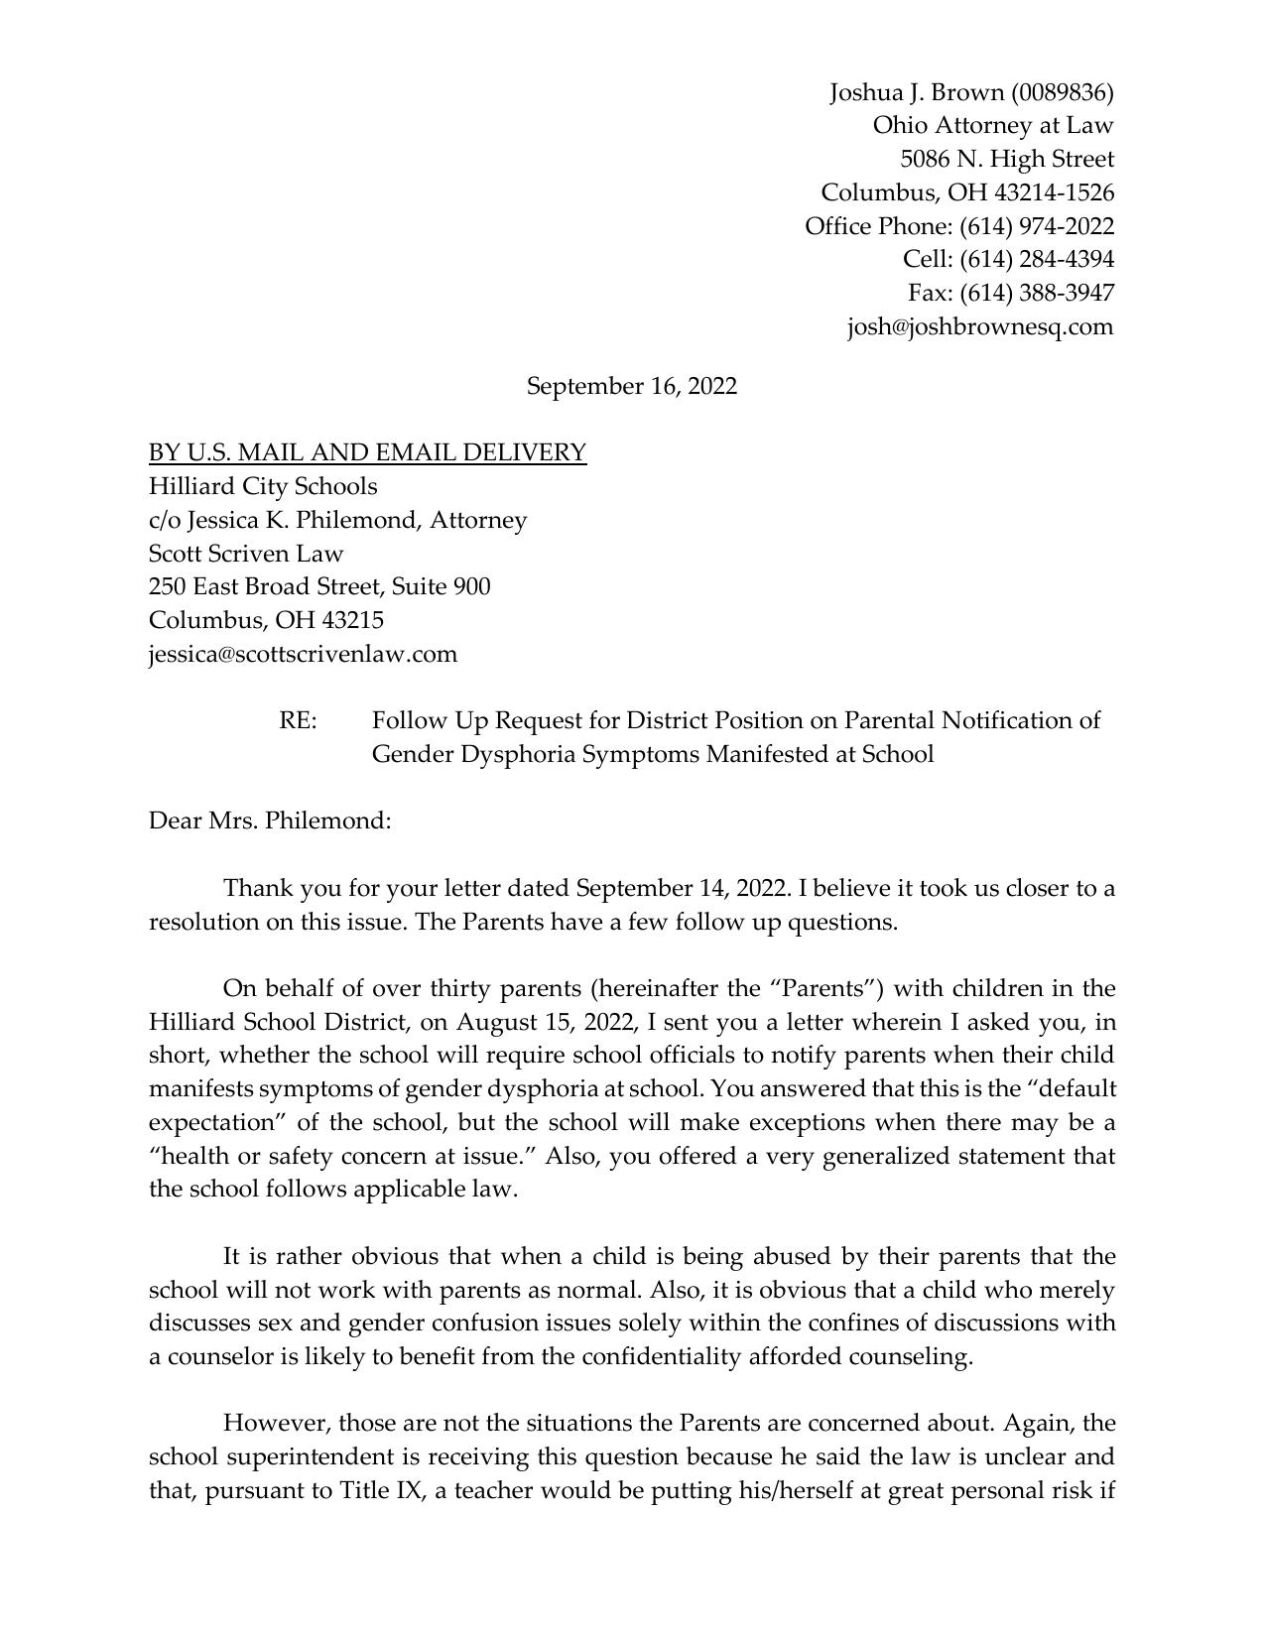 Parents' second letter to Hilliard City Schools